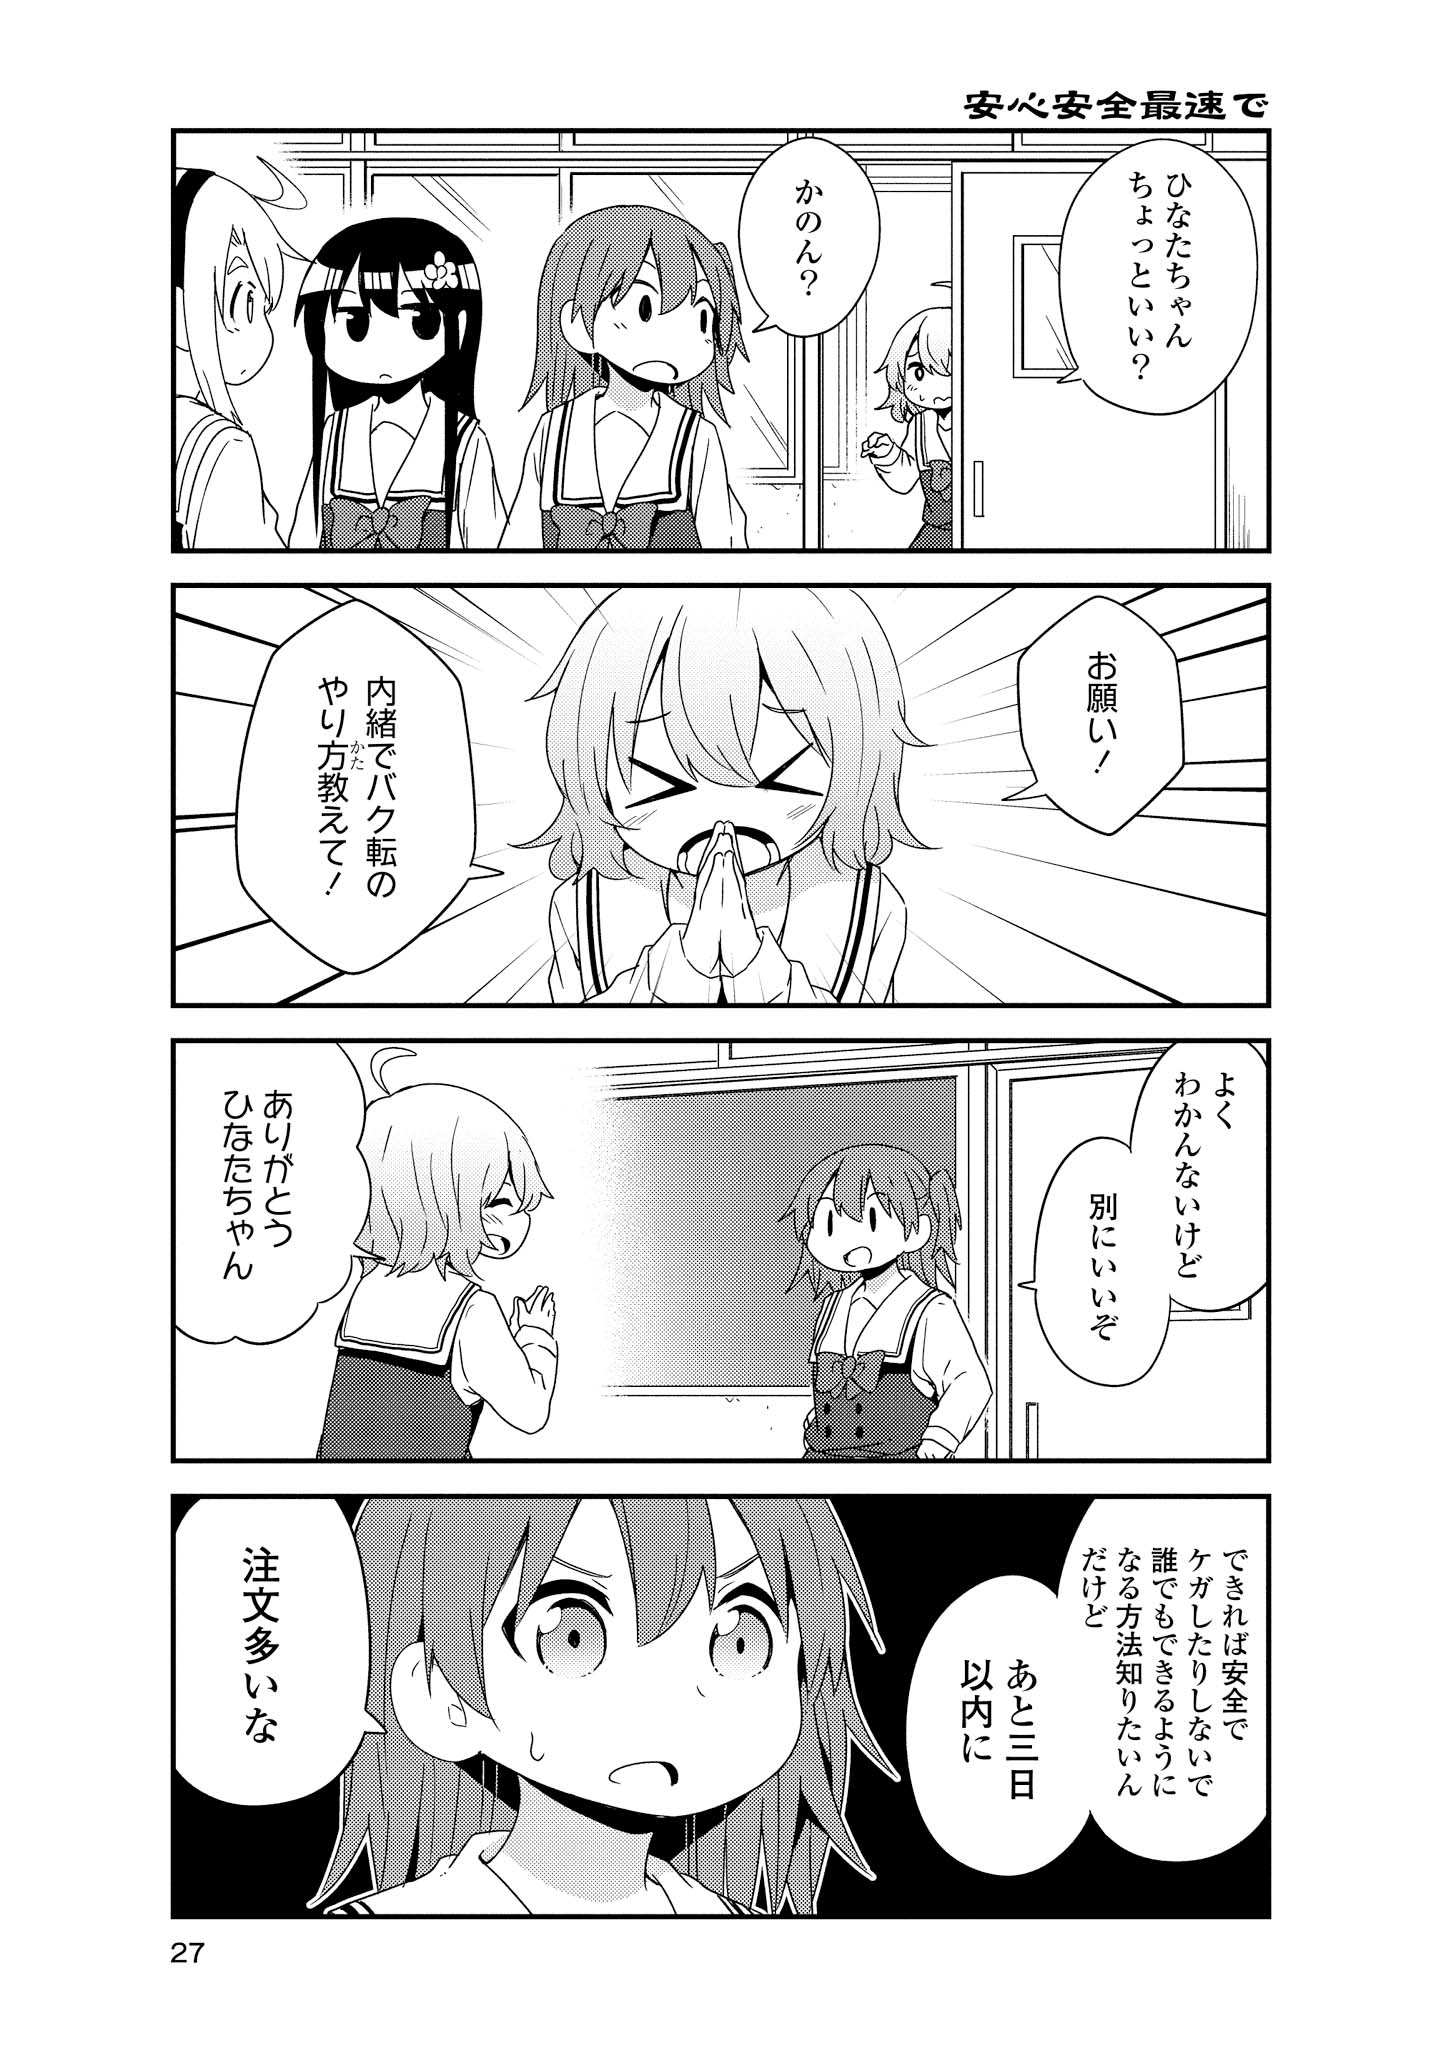 Watashi ni Tenshi ga Maiorita! - Chapter 38 - Page 5